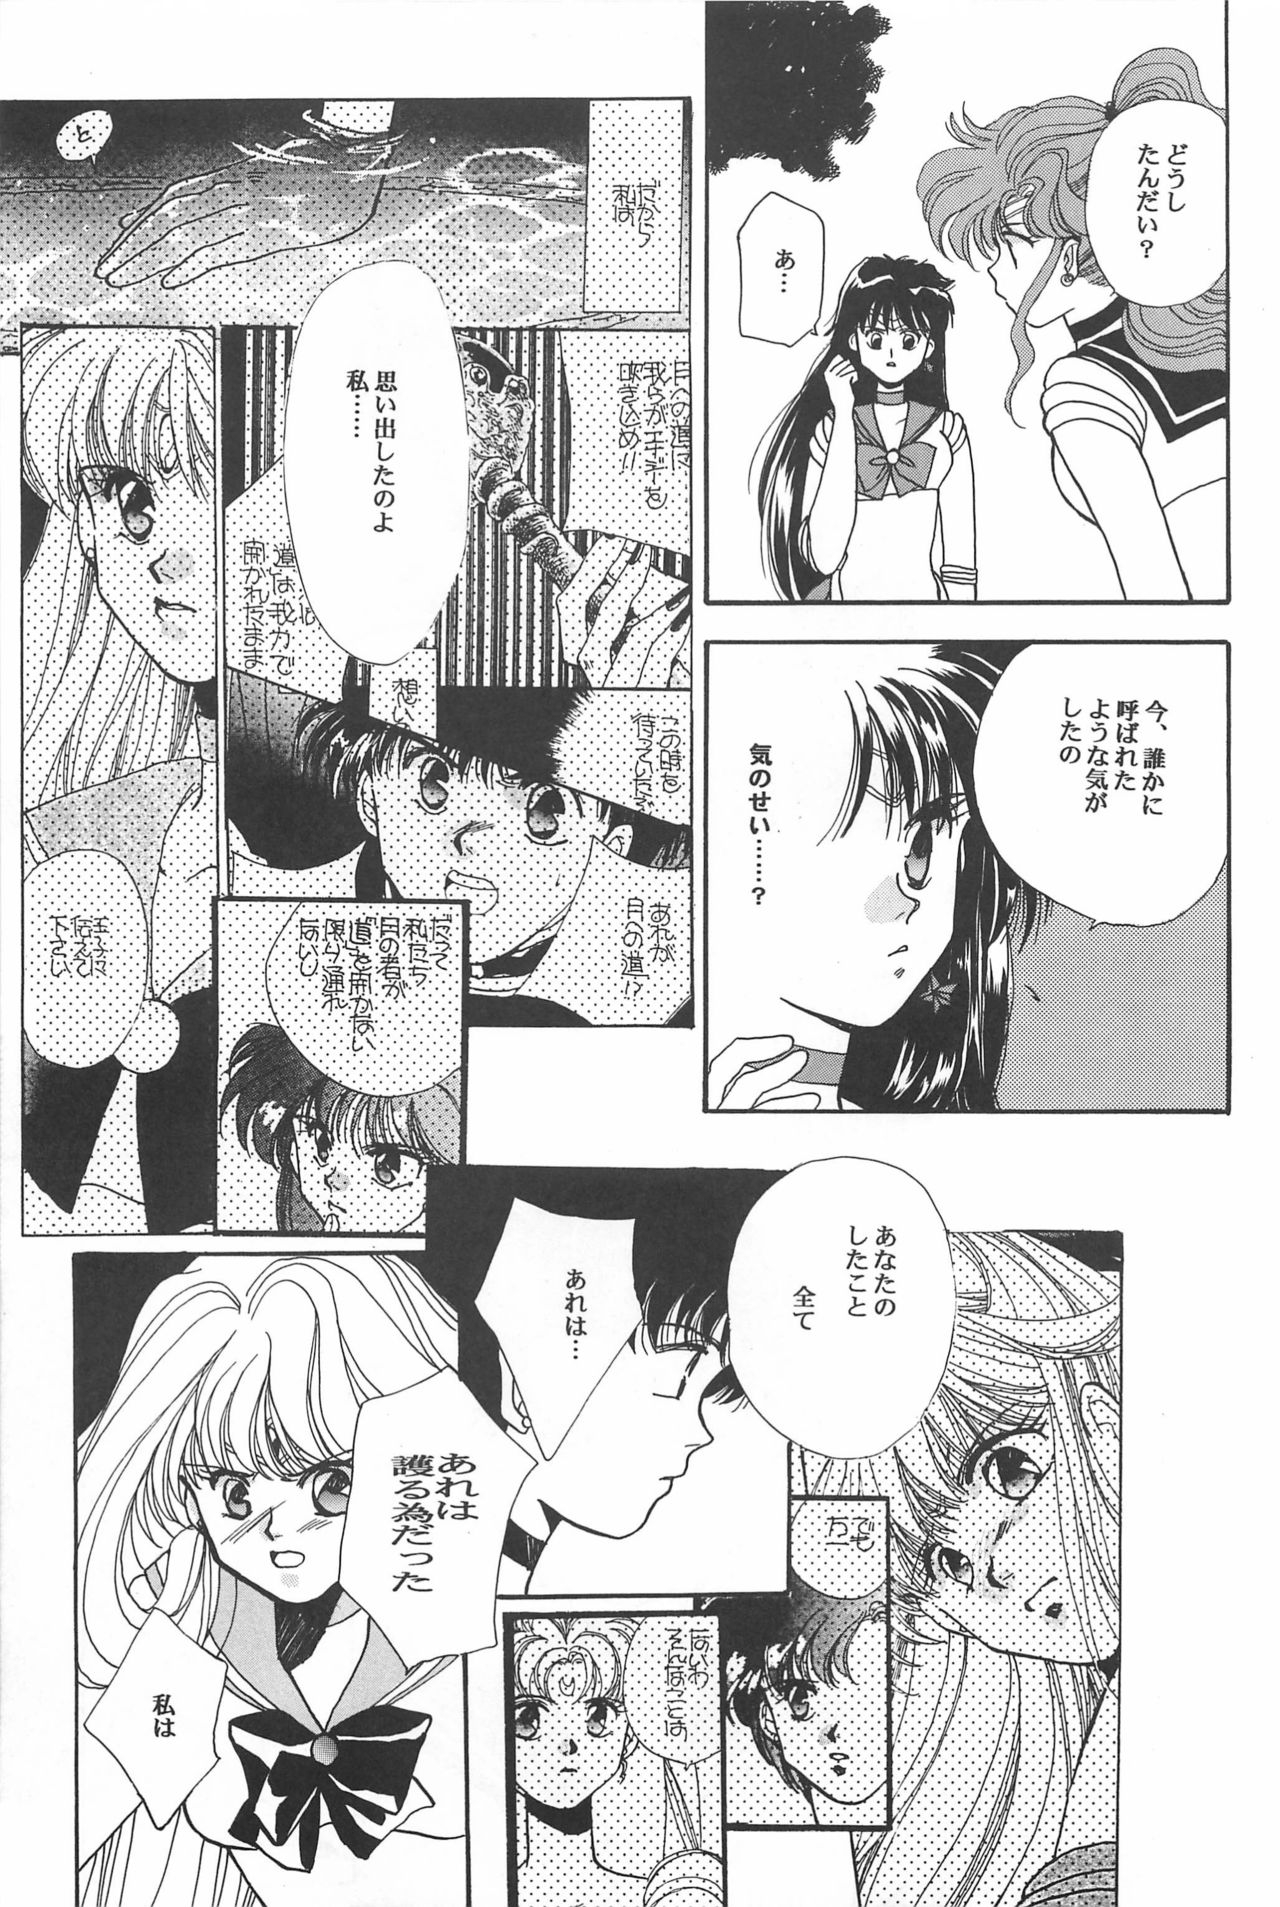 [Hello World (Muttri Moony)] Kaze no You ni Yume no You ni - Sailor Moon Collection (Sailor Moon) 142